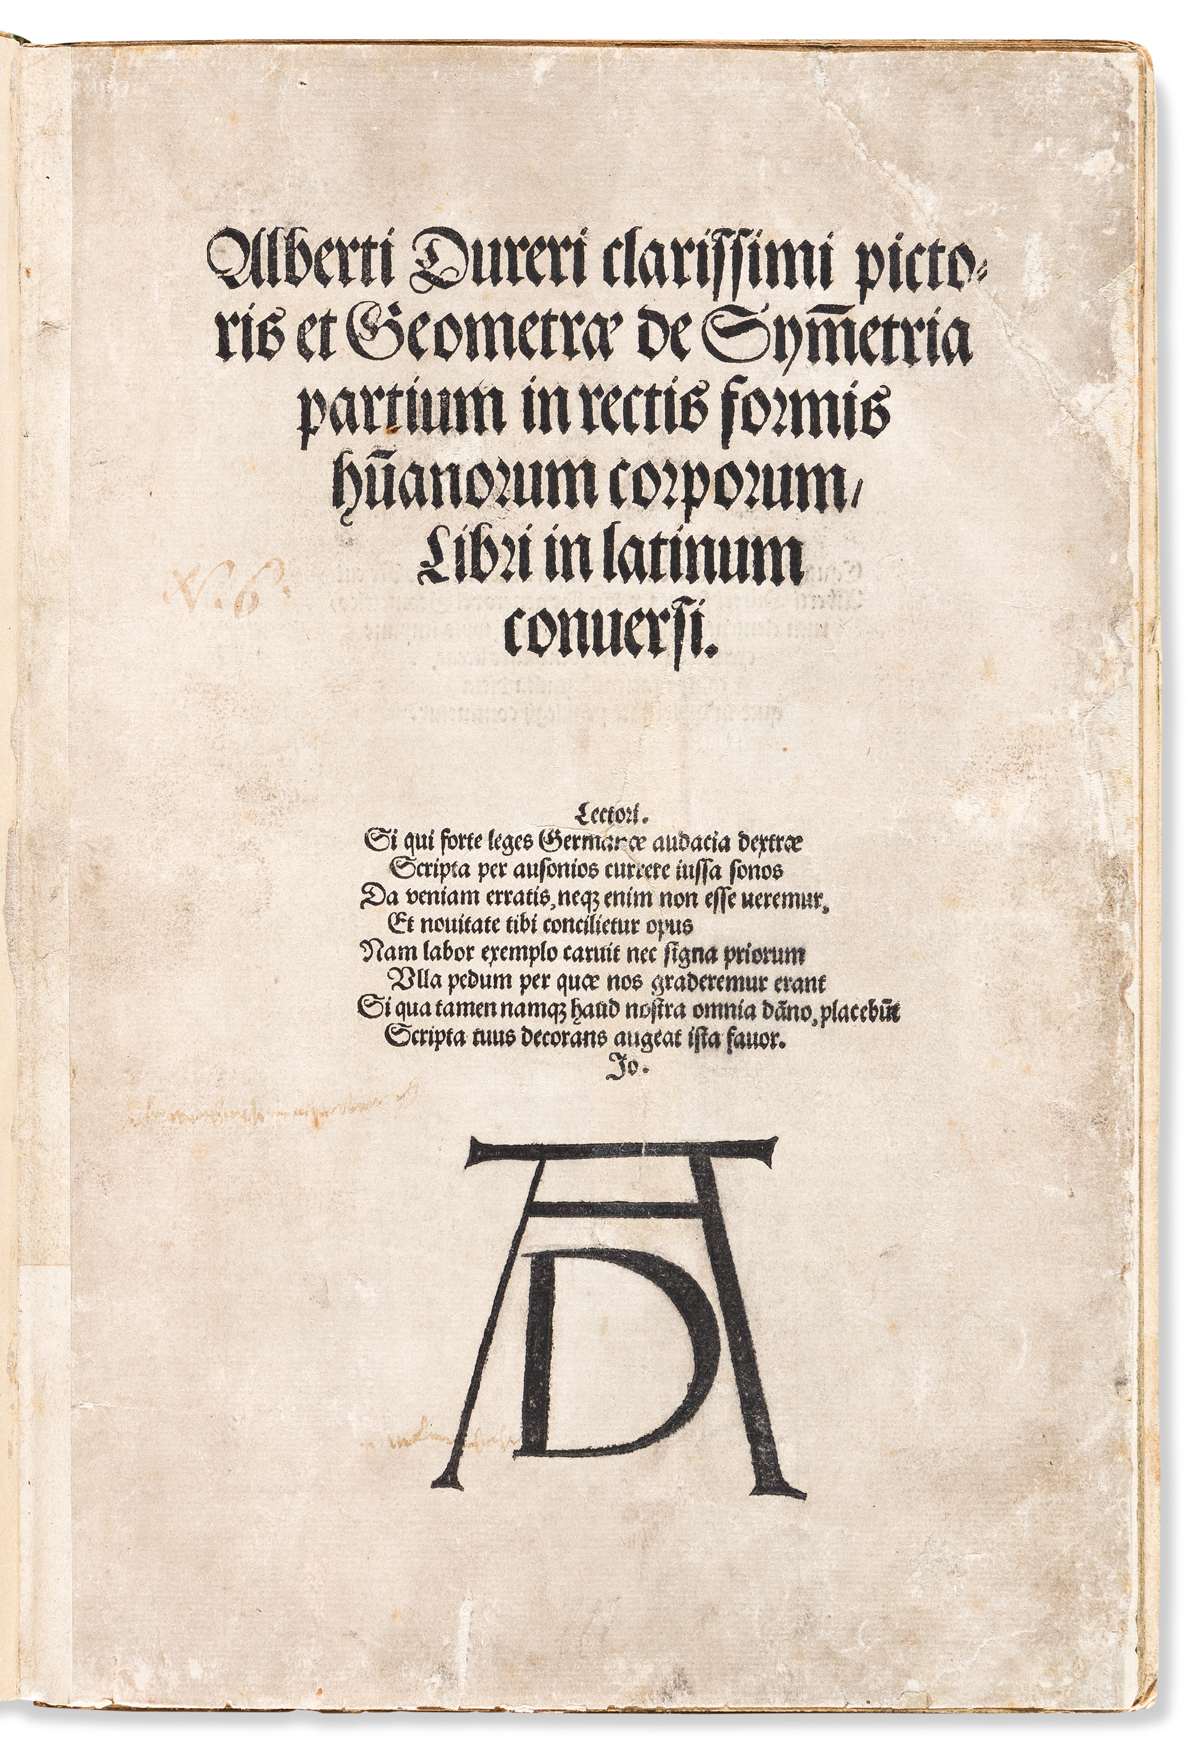 Dürer, Albrecht (1471-1528) Alberti Dureri Clarissimi Pictoris et Geometrae de Symmetria Partium in Rectis Formios Humanorum Corporum L